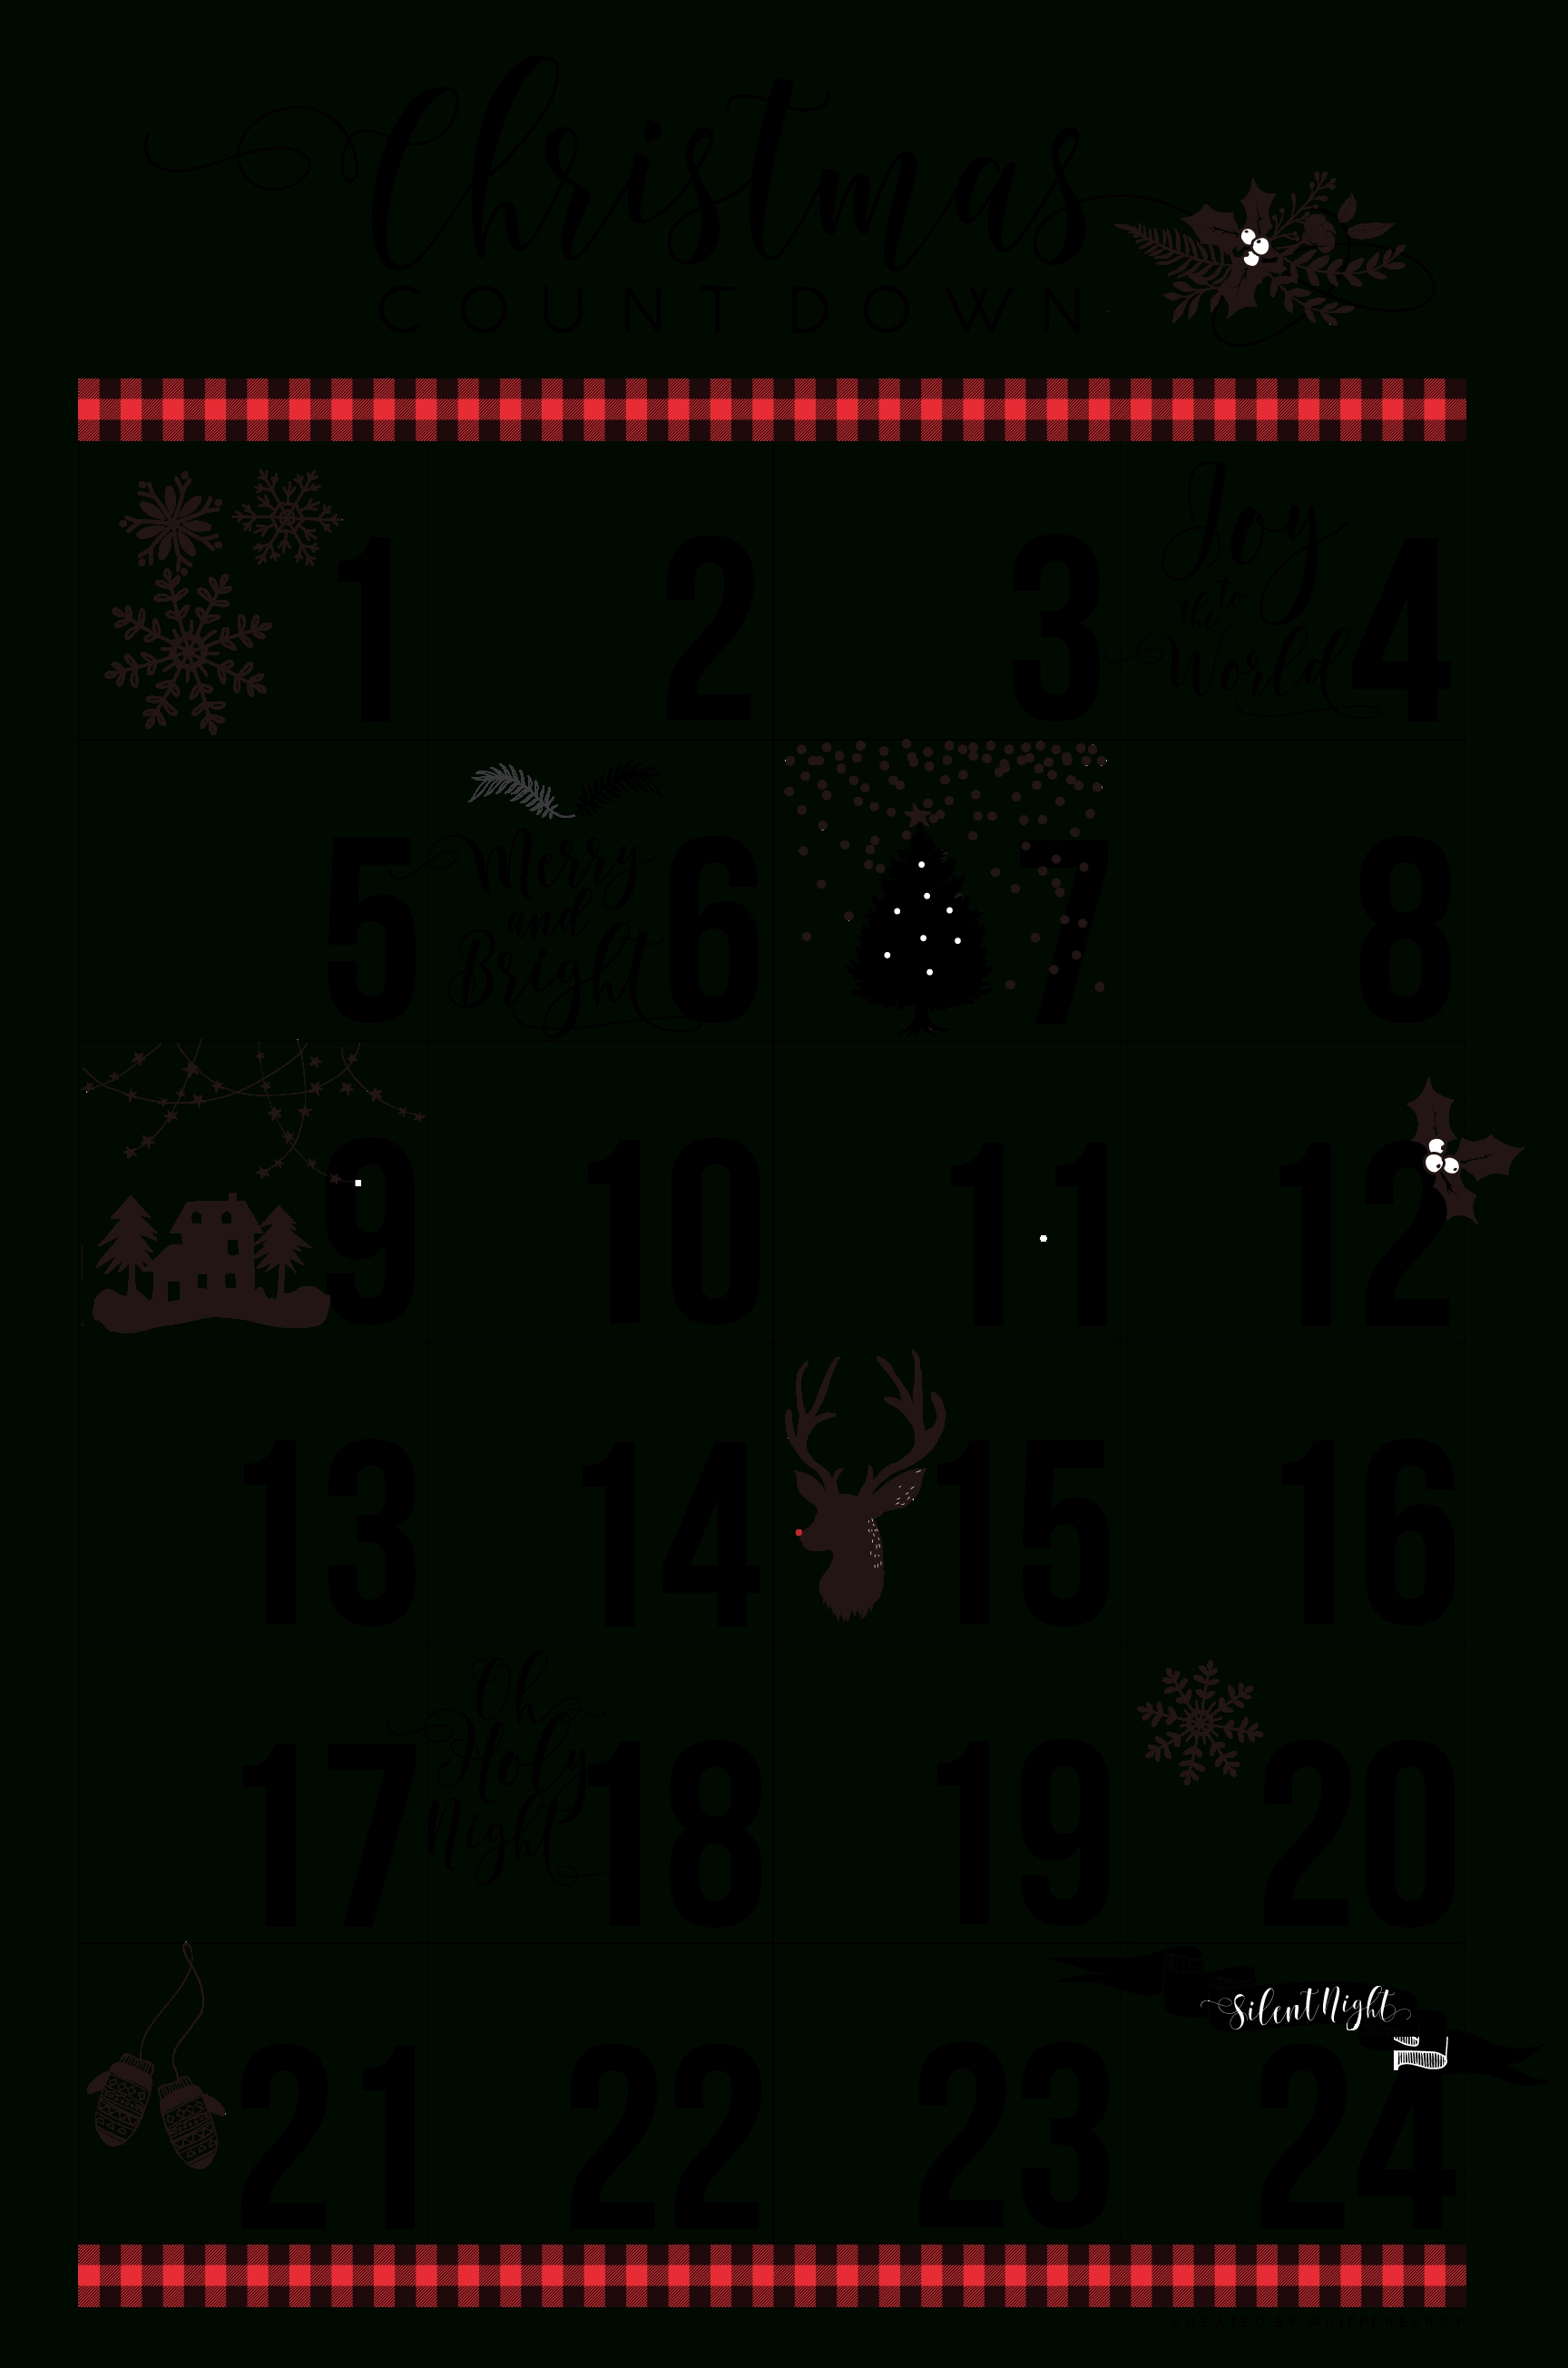 Free Printable Christmas Countdown Calendar - Whipperberry Free Printable Christmas Countdown Calendar